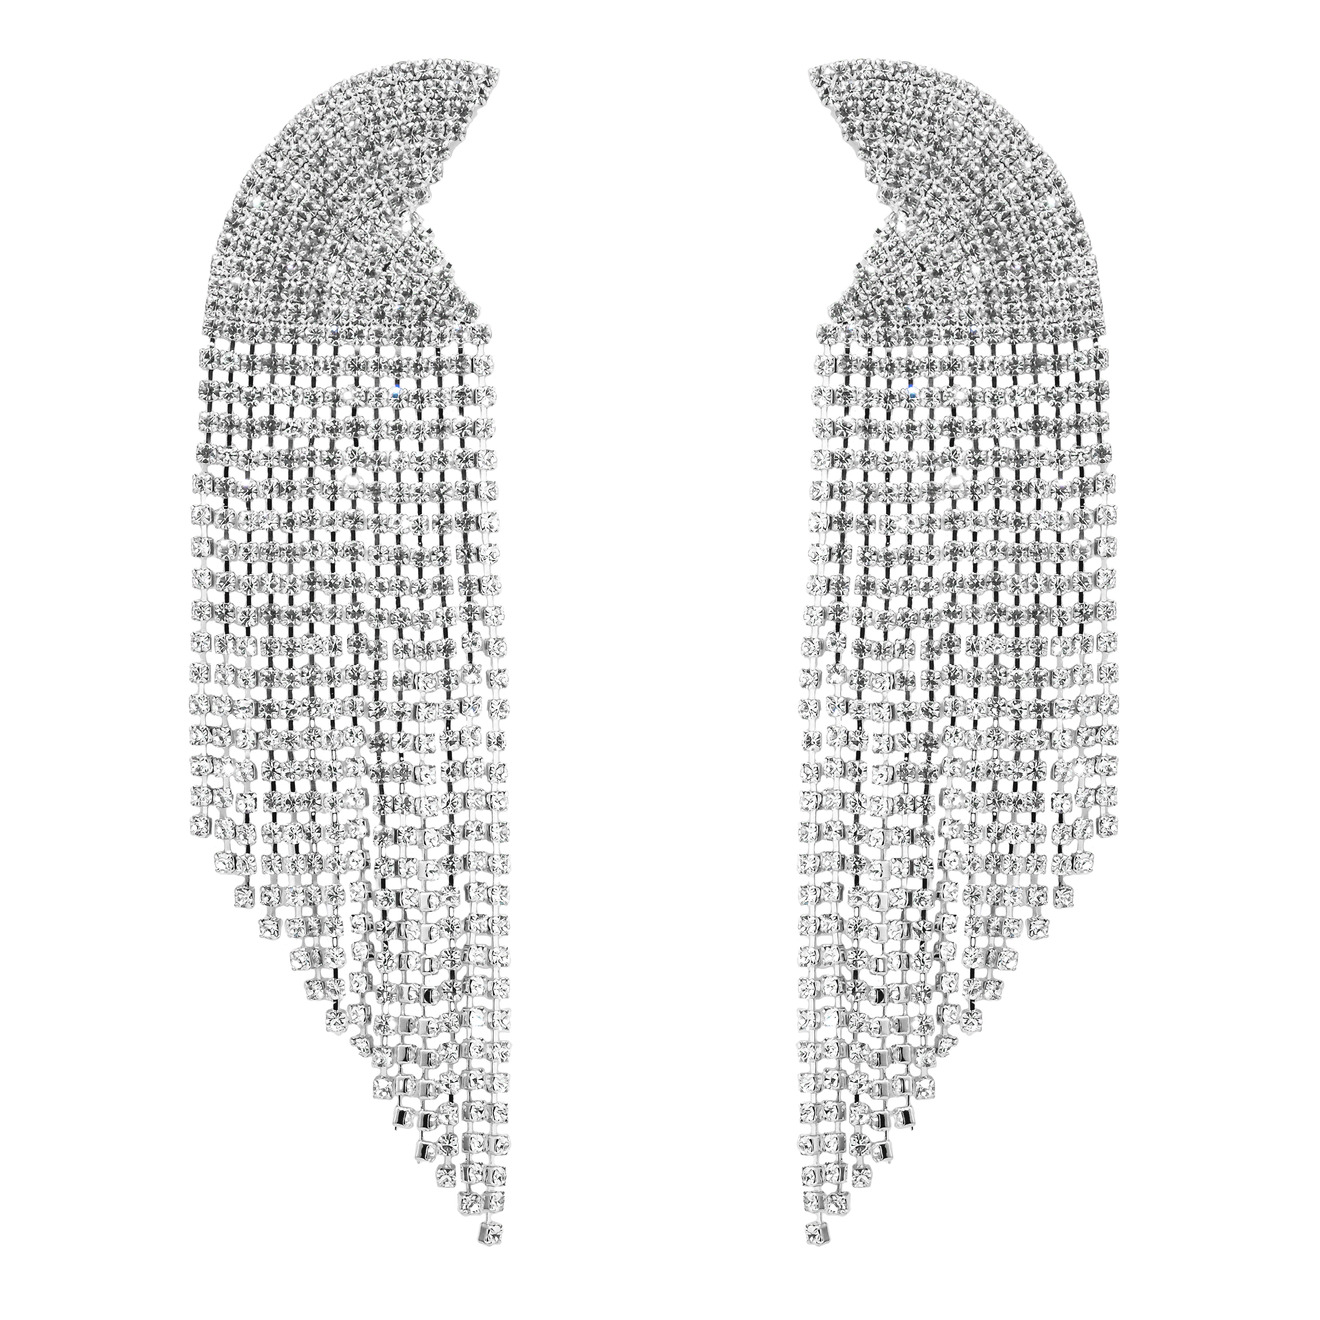 Herald Percy Серебристые серьги-полукруги с кристаллами цена и фото